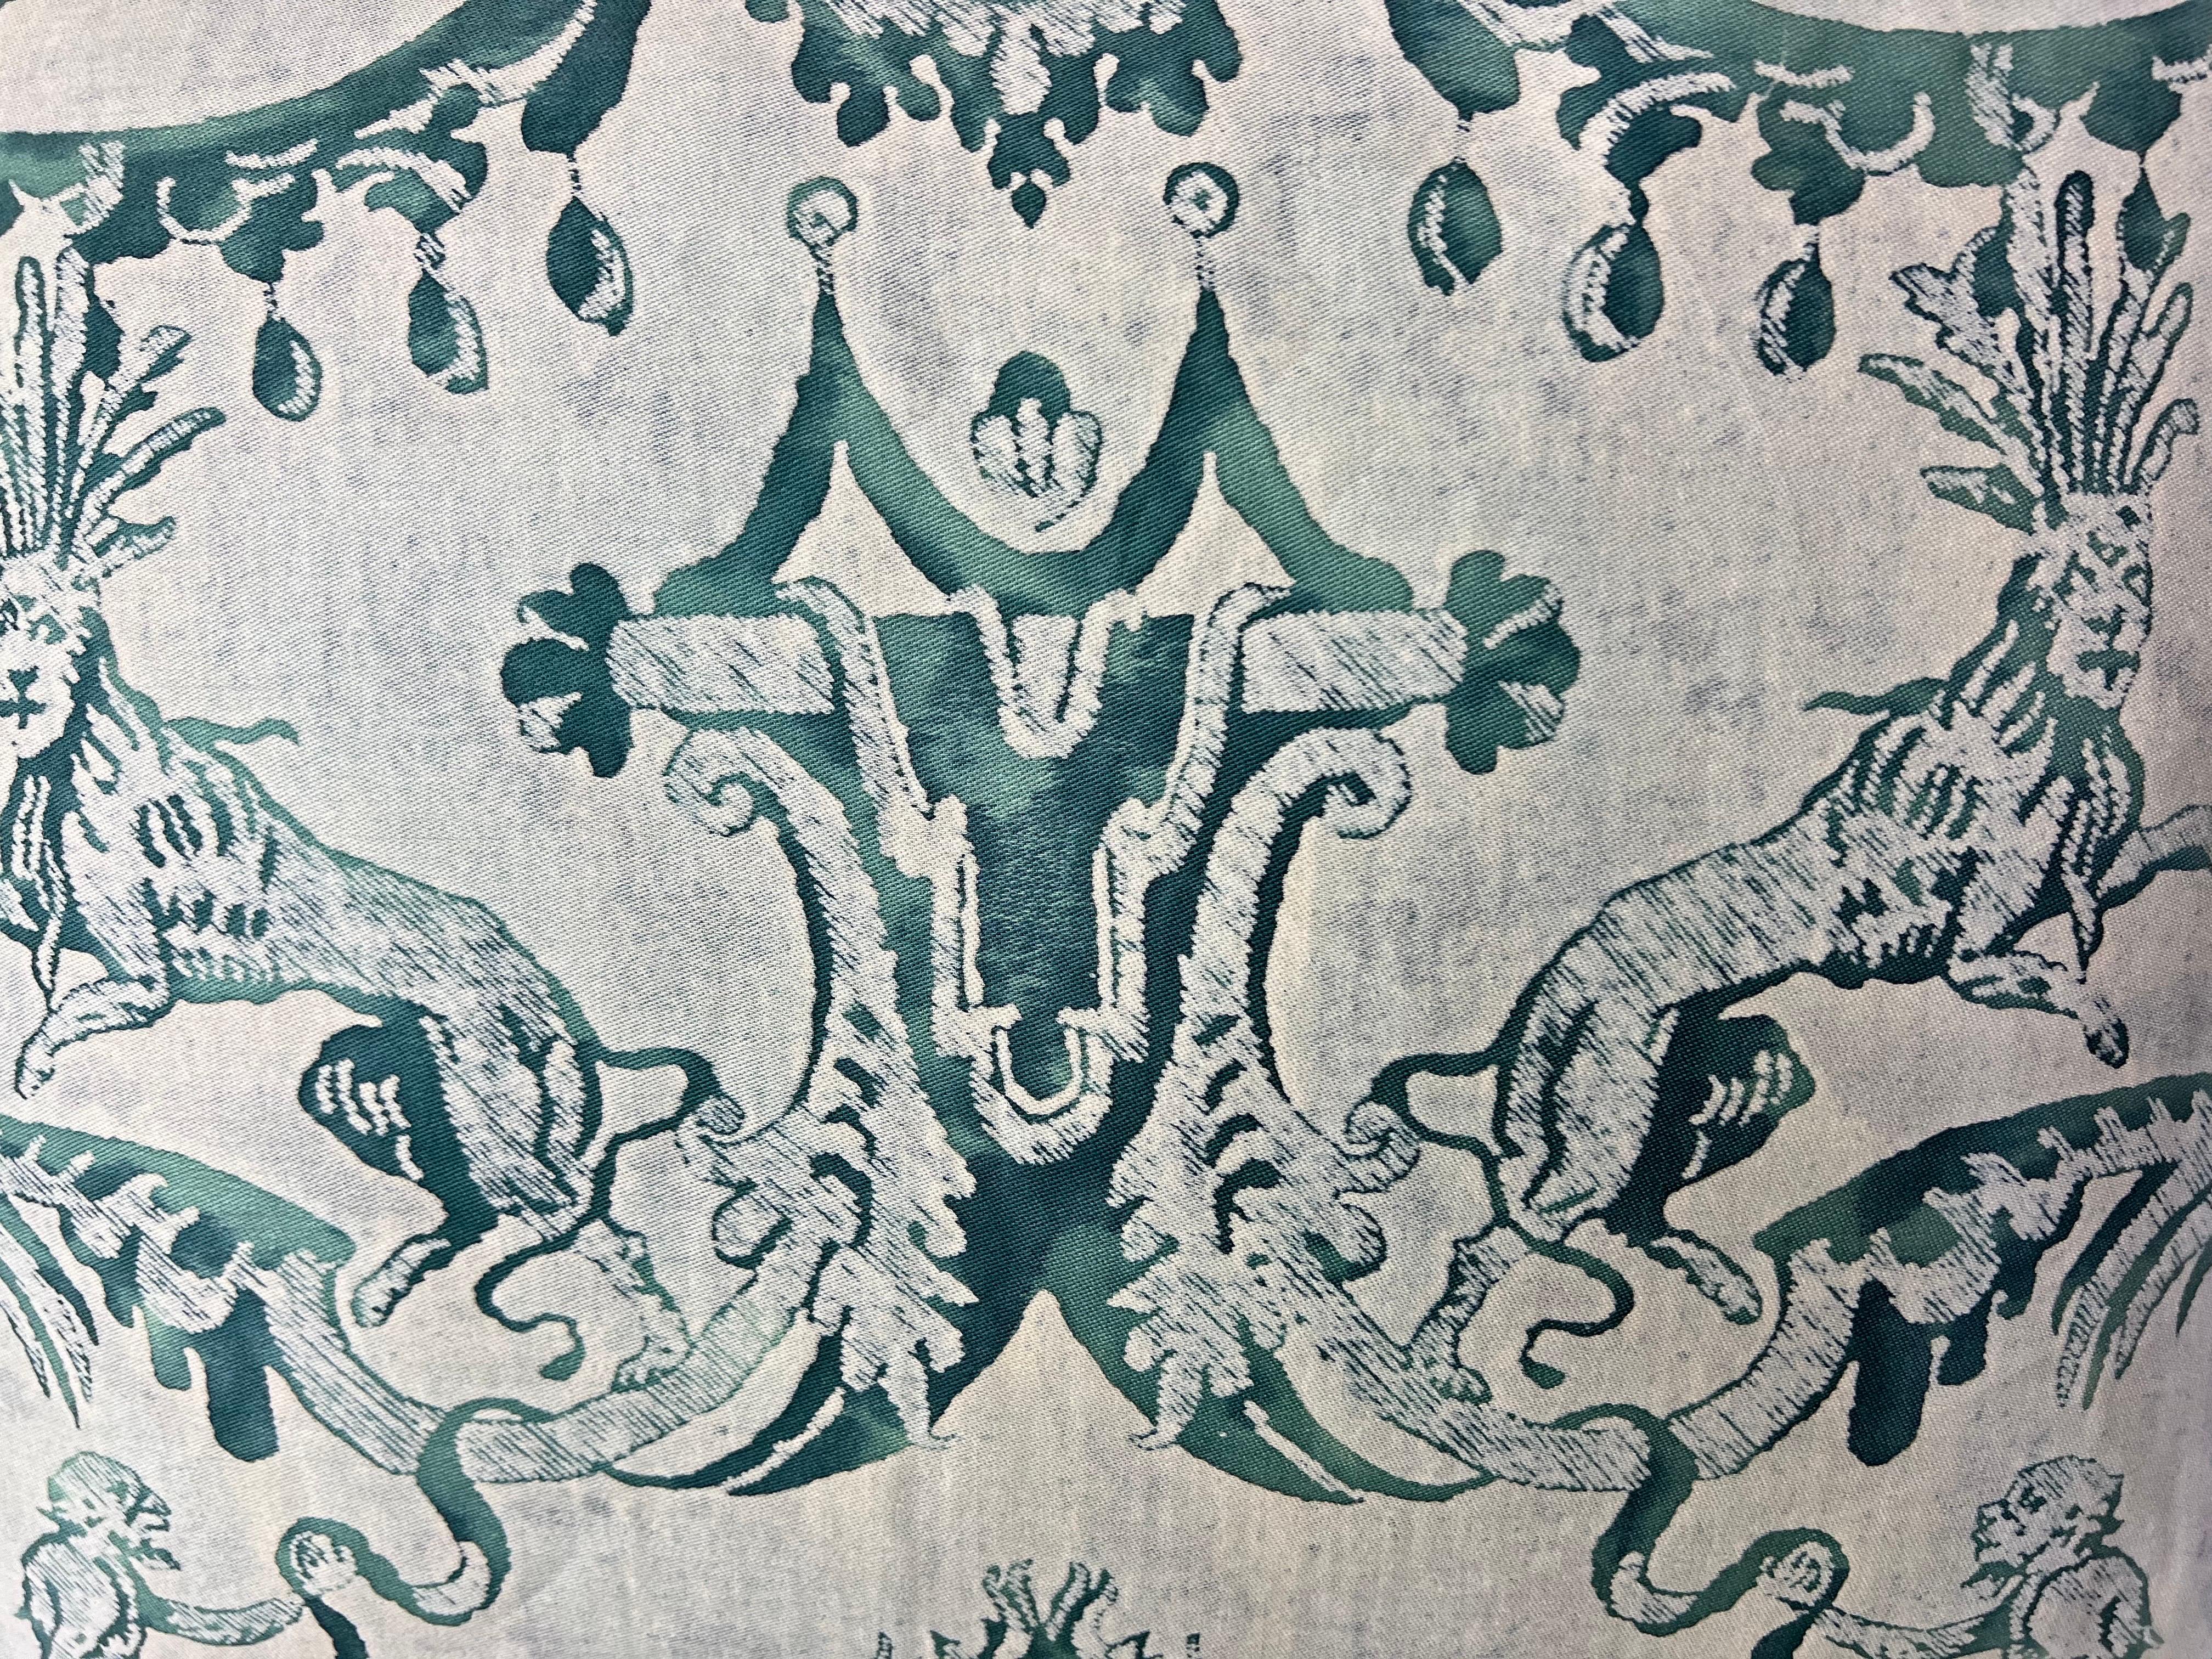 Paire de coussins en textile Fortuny à motifs Marzianno de couleur sarcelle et blanc.  Elles représentent des lions et des singes vénitiens avec des guirlandes, des feuilles d'acanthe et des détails complexes.  Ils sont doublés d'un velours sarcelle